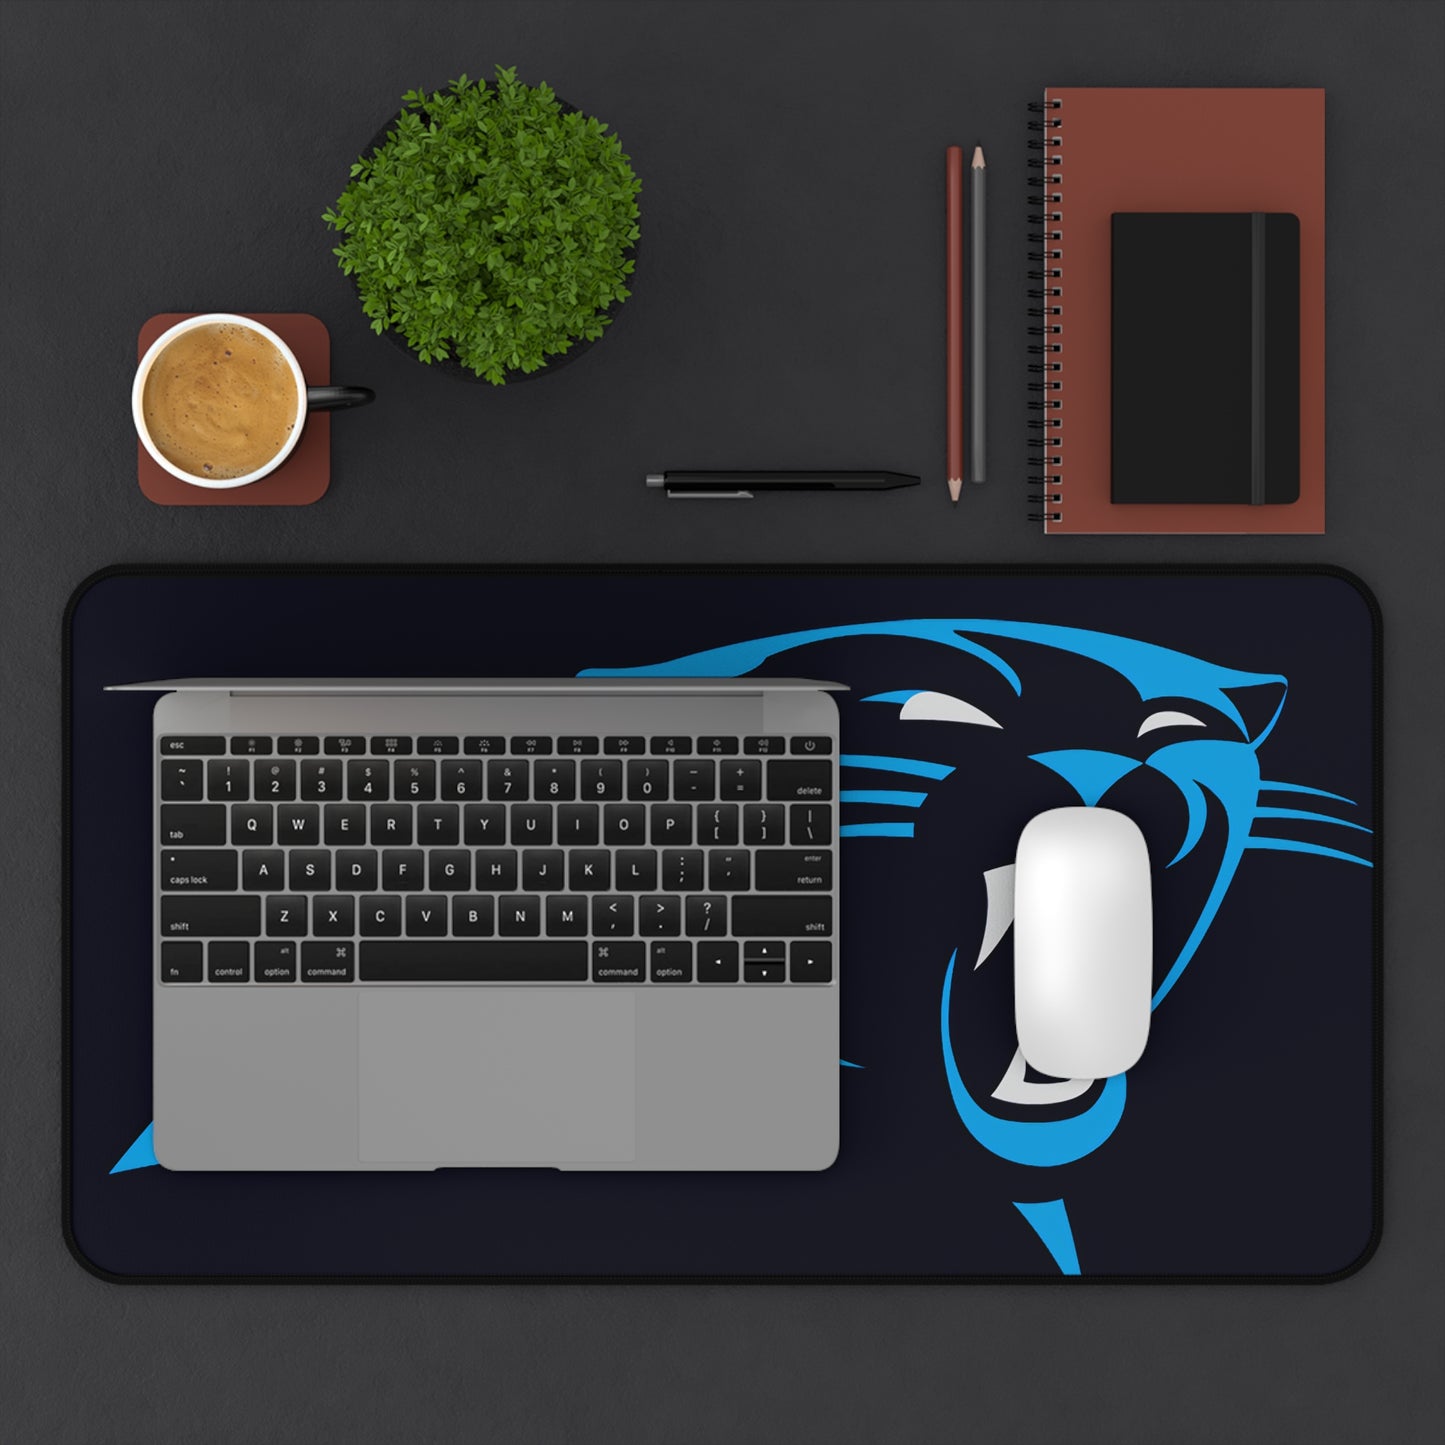 Carolina Panthers NFL Football High Definition Desk Mat Mousepad